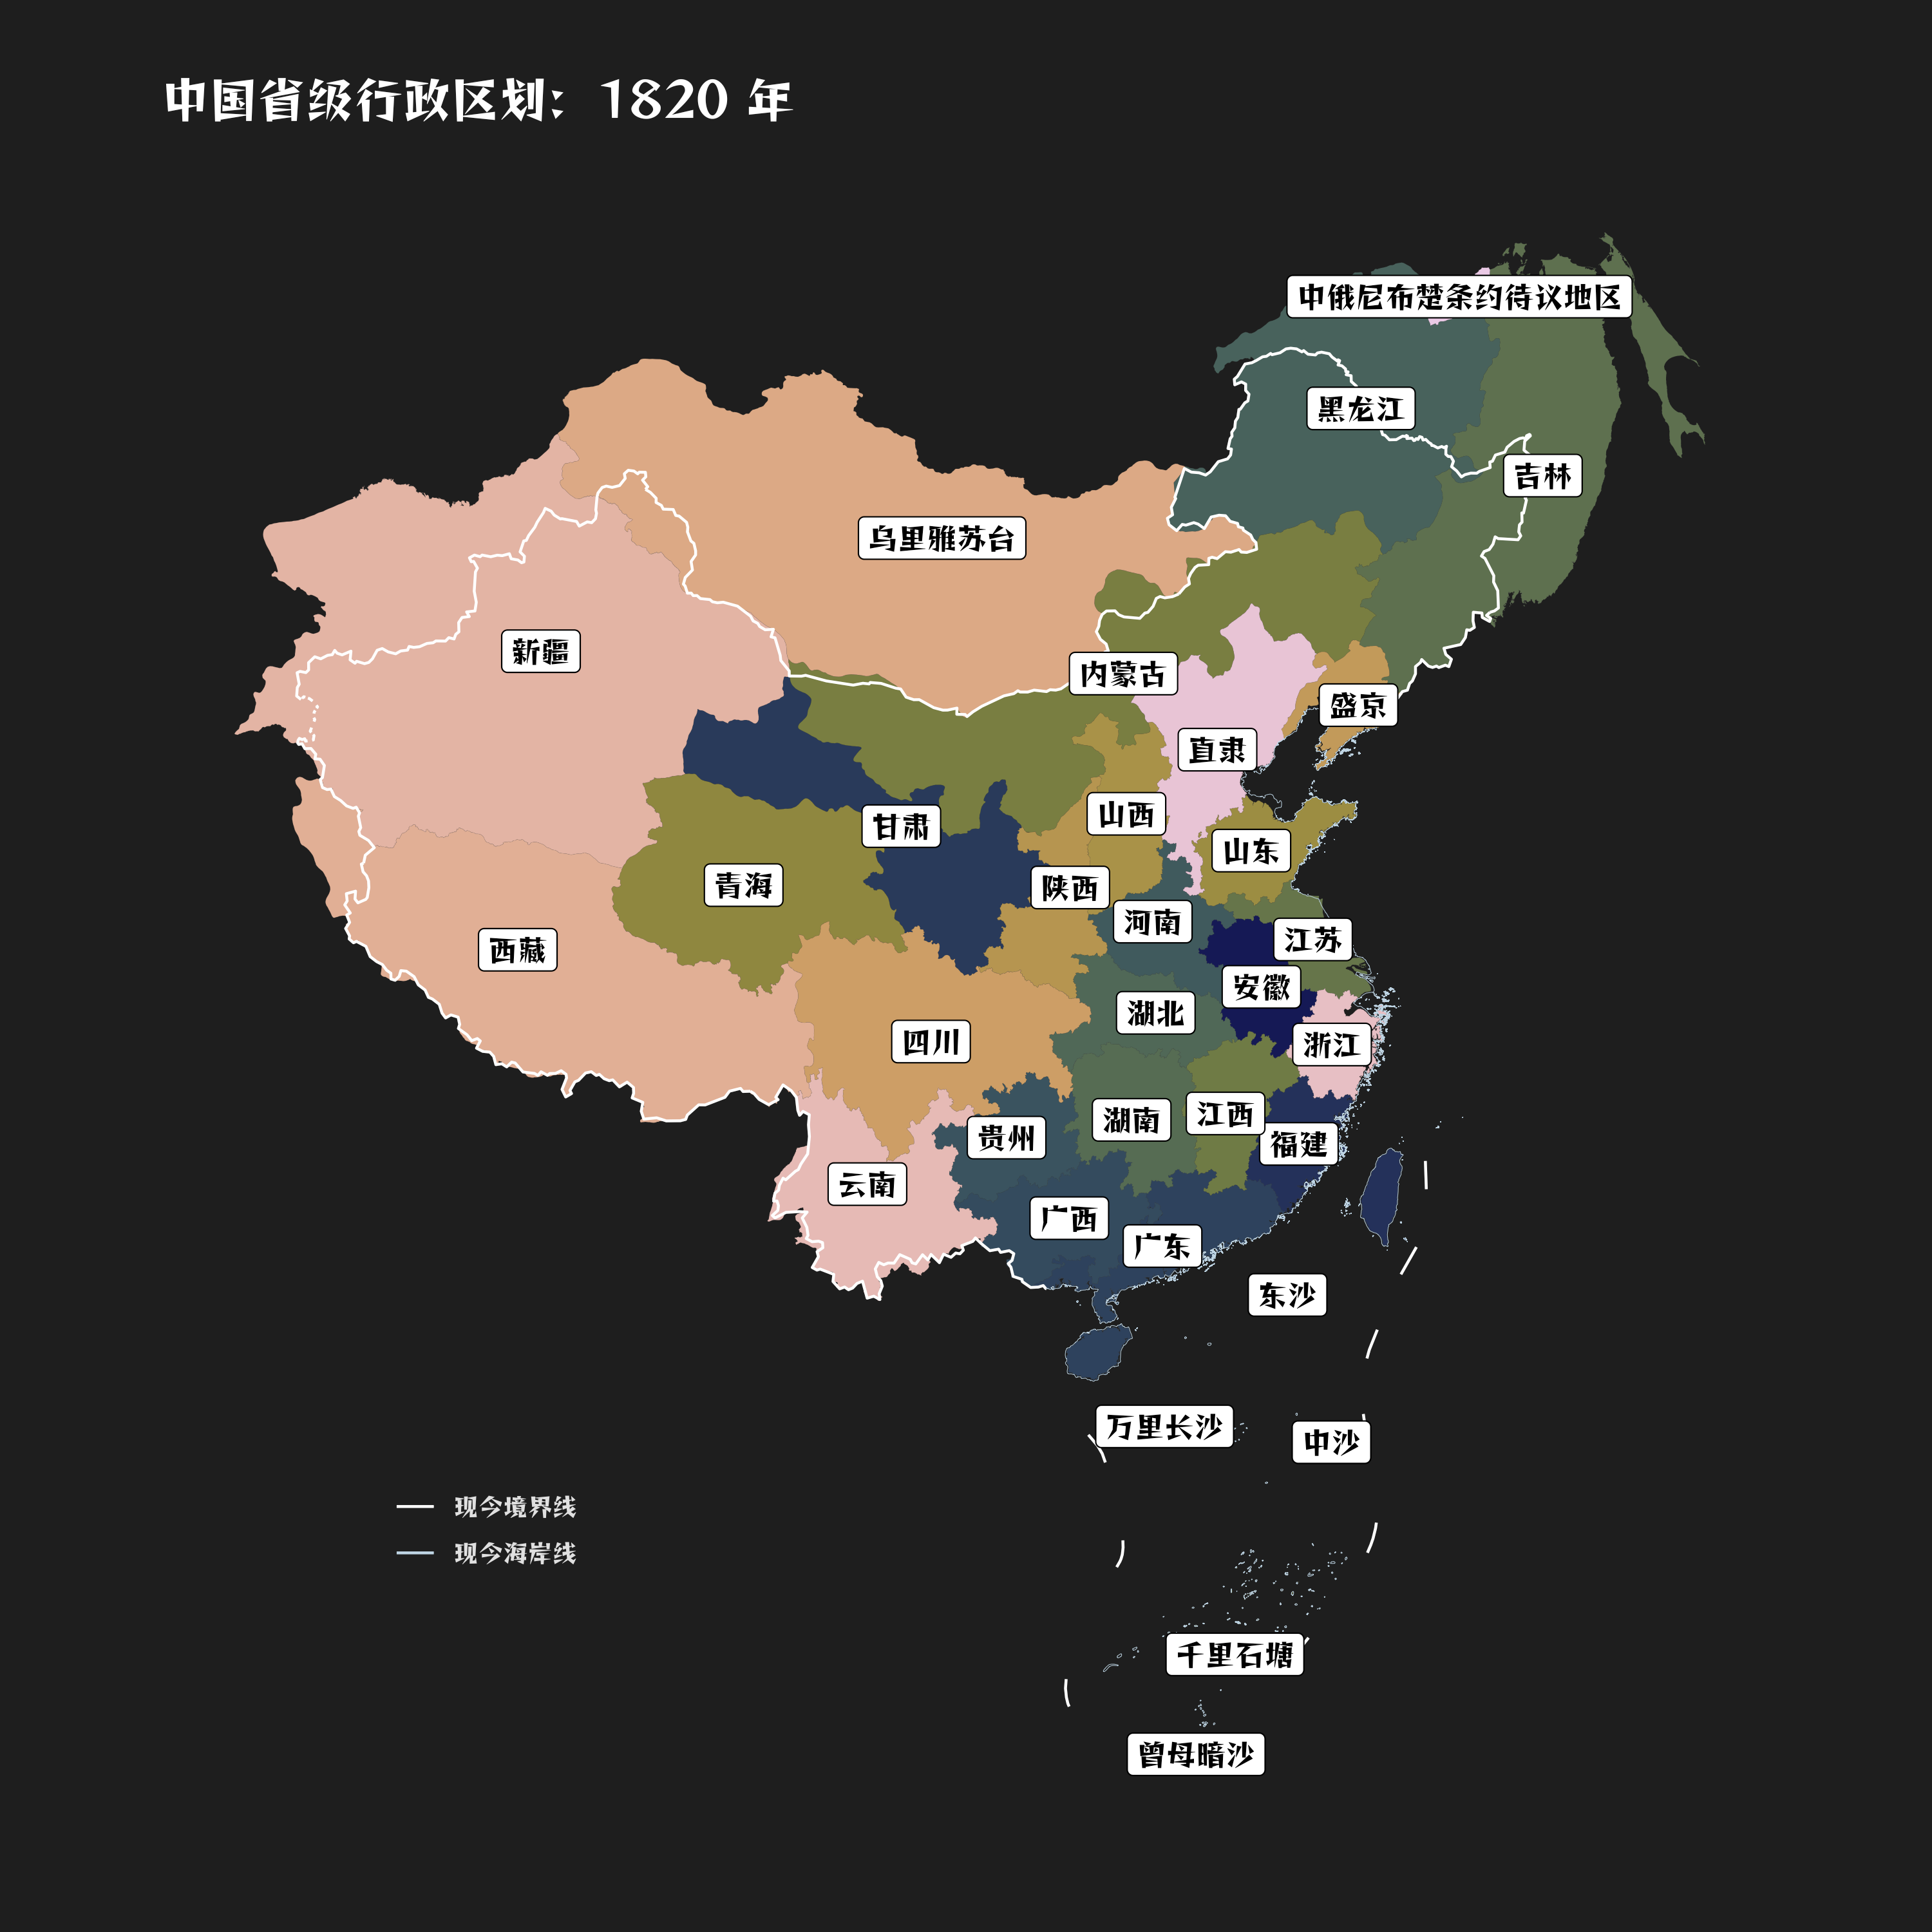 1820 年中国各省行政区划